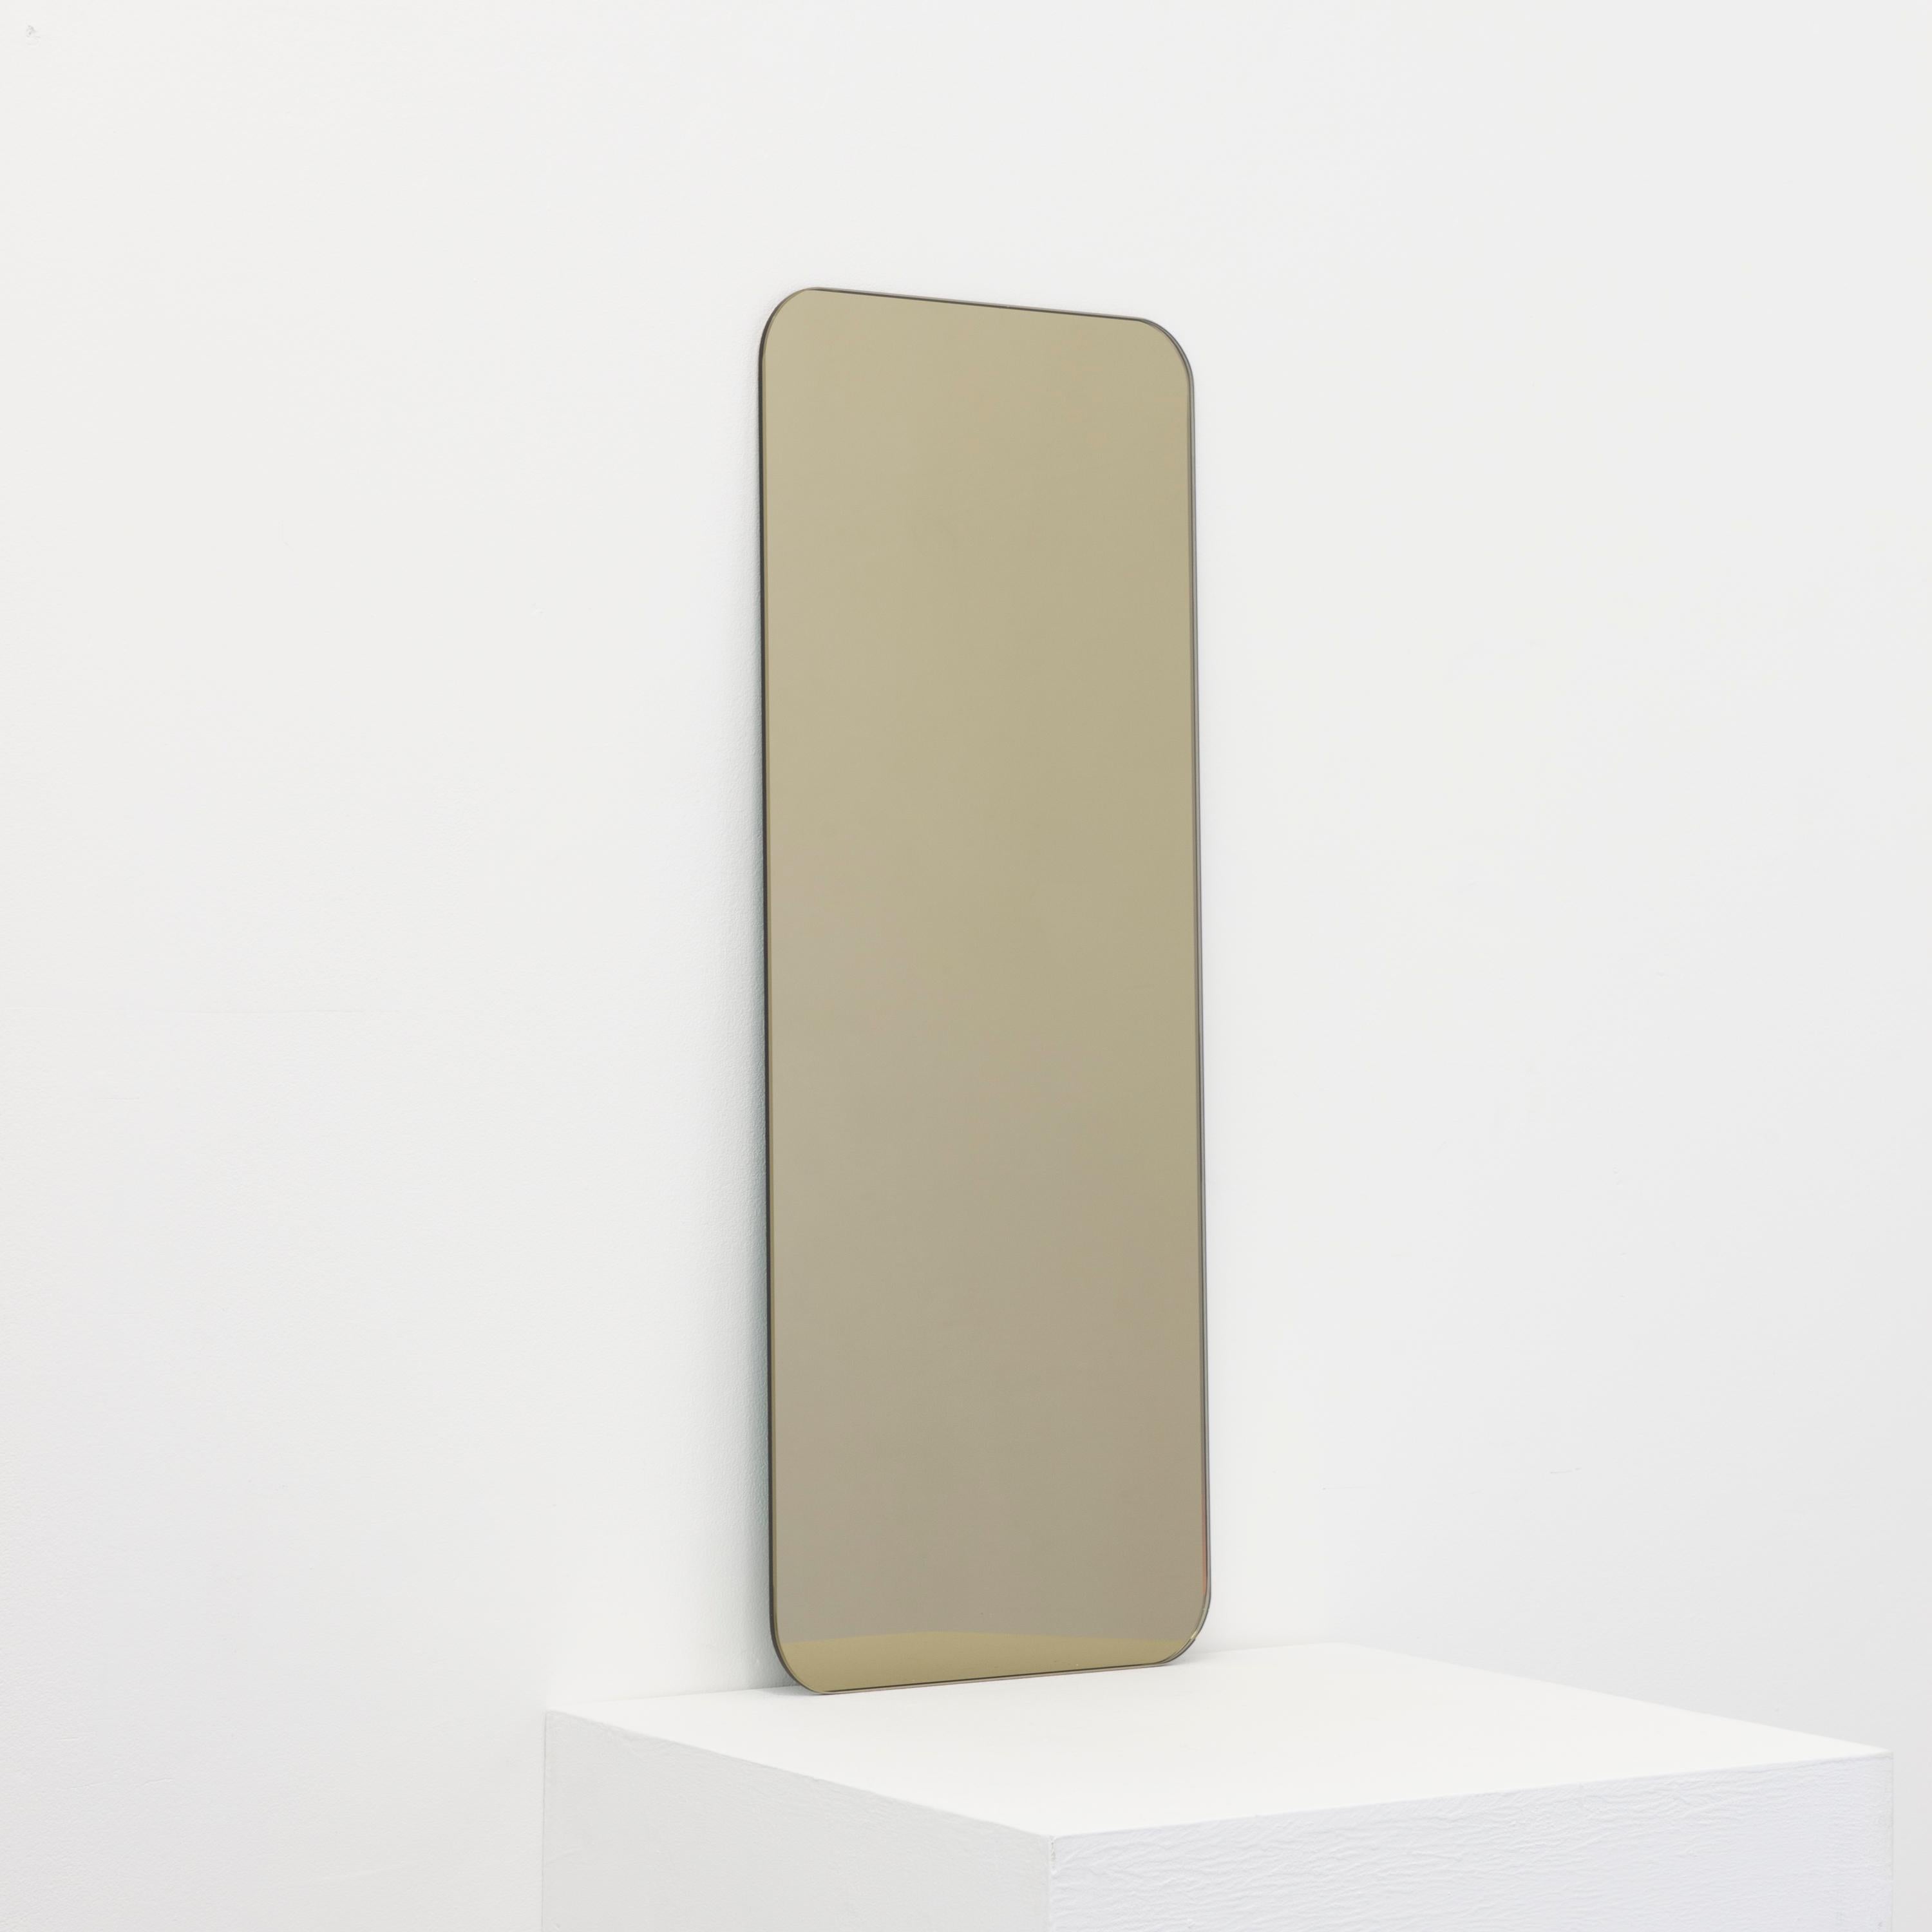 Miroir minimaliste Quadris™ de forme rectangulaire teinté bronze sans cadre avec un effet flottant. Un design de qualité qui garantit que le miroir est parfaitement parallèle au mur. Conçu et fabriqué à Londres, au Royaume-Uni.

Equipé de plaques